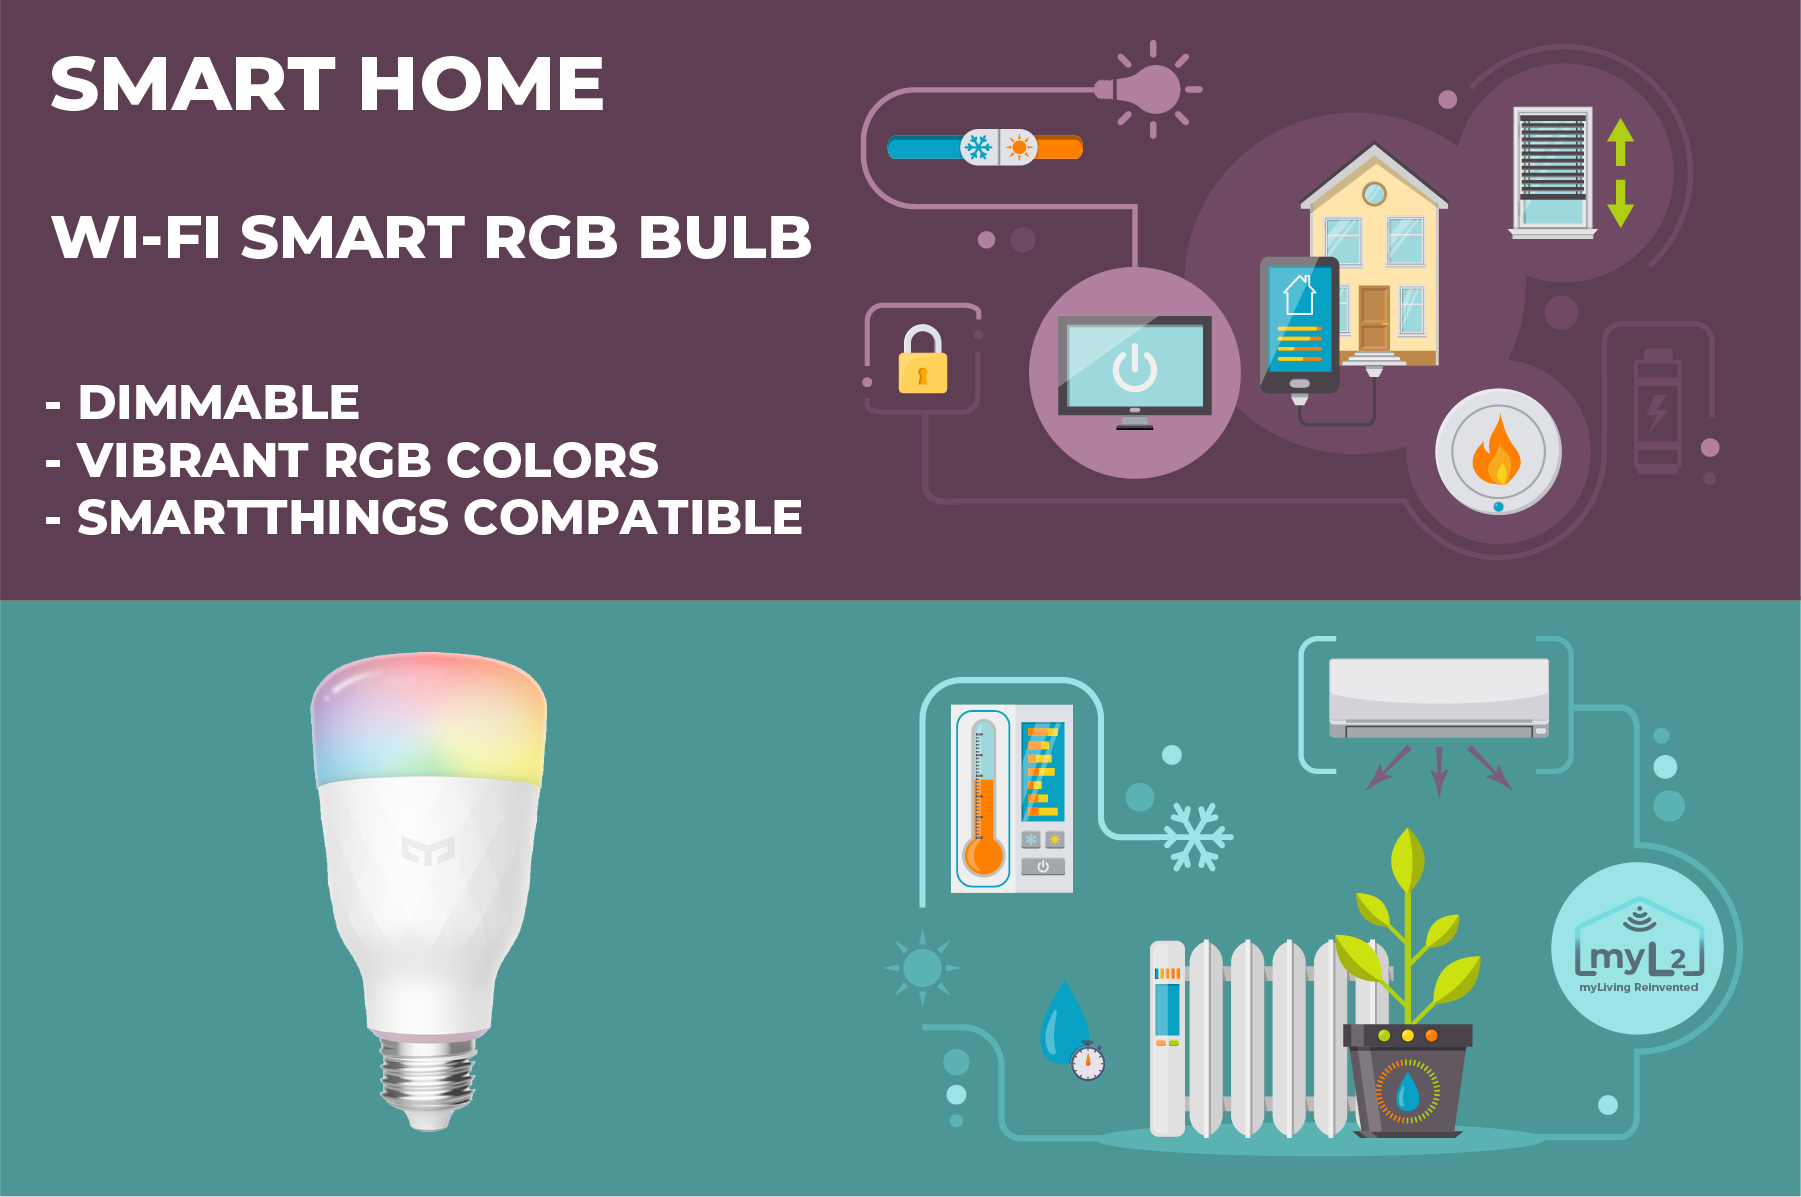 Wi-Fi Smart RGB Bulb